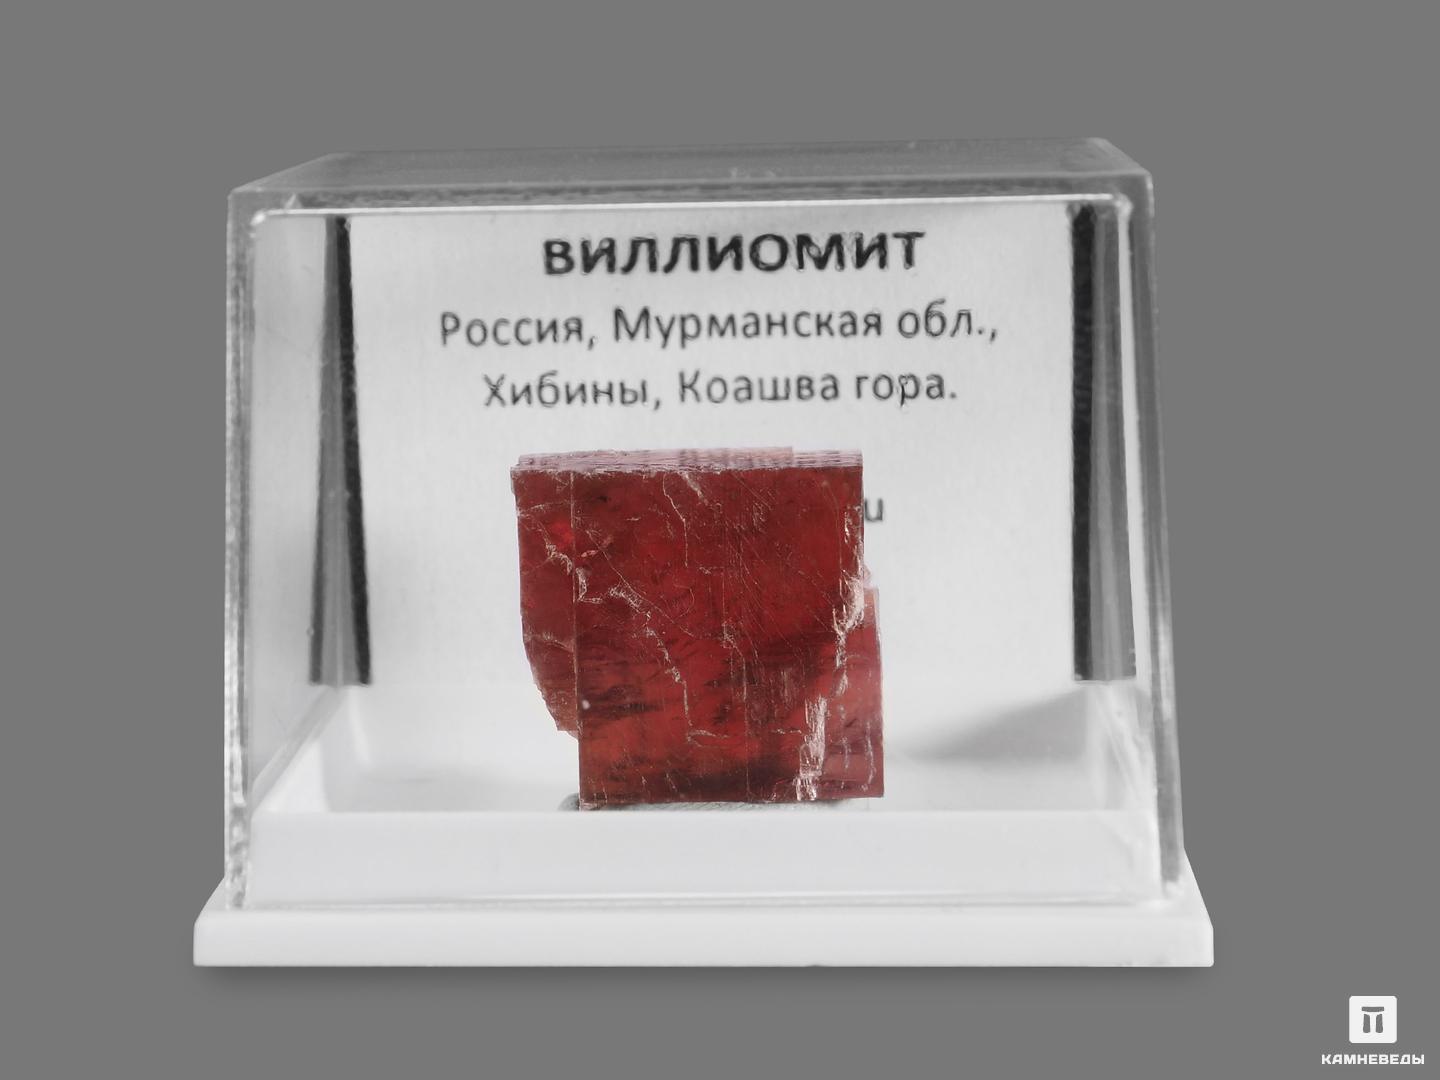 Виллиомит в пластиковом боксе, 1,6х1,6х0,9 см, 18654, фото 2